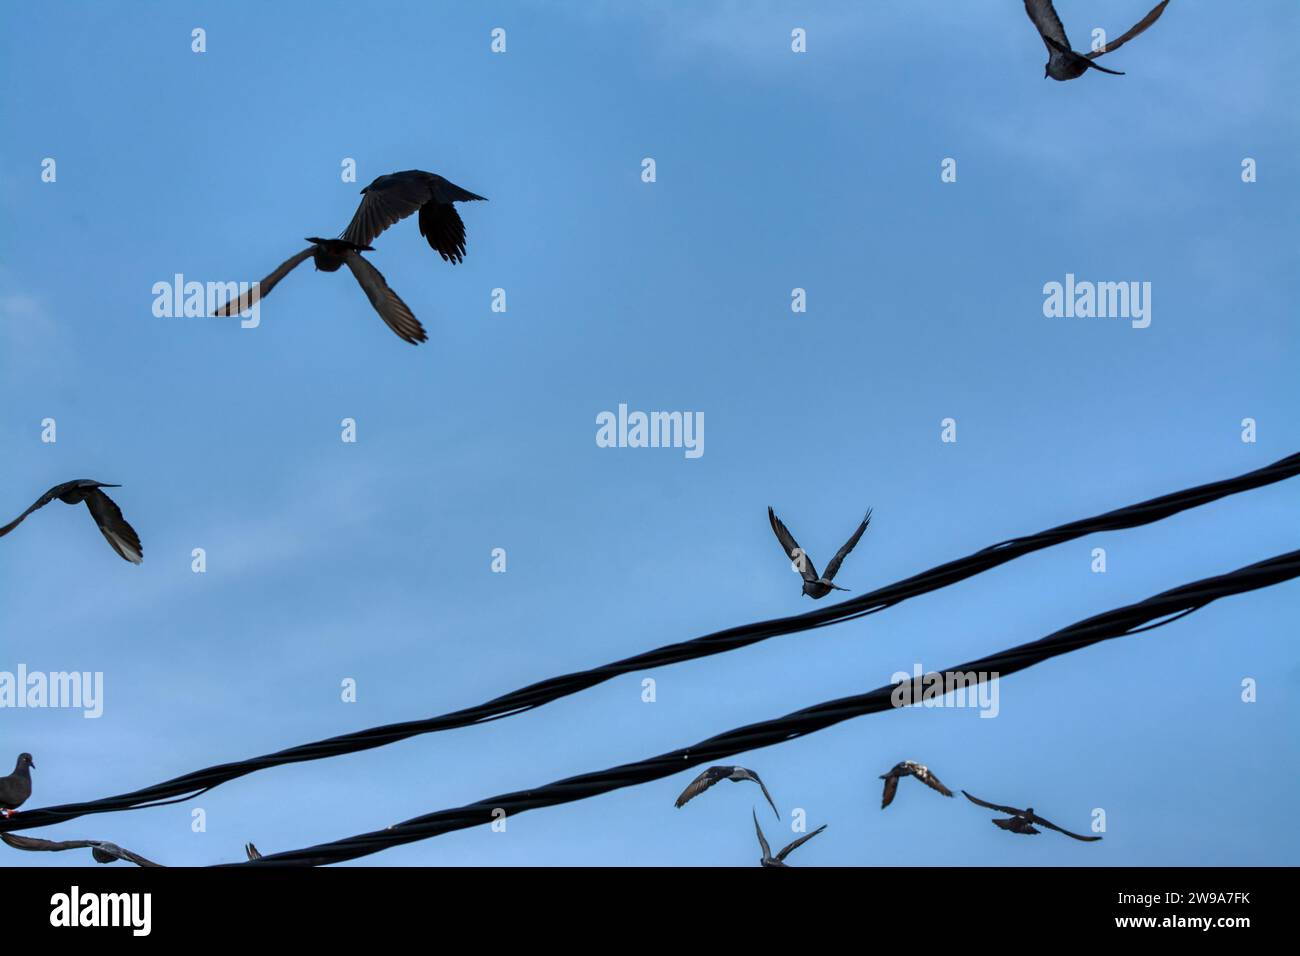 actividades de paloma salvaje y cuervo volando alrededor del poste de cable de la calle eléctrica. Foto de stock